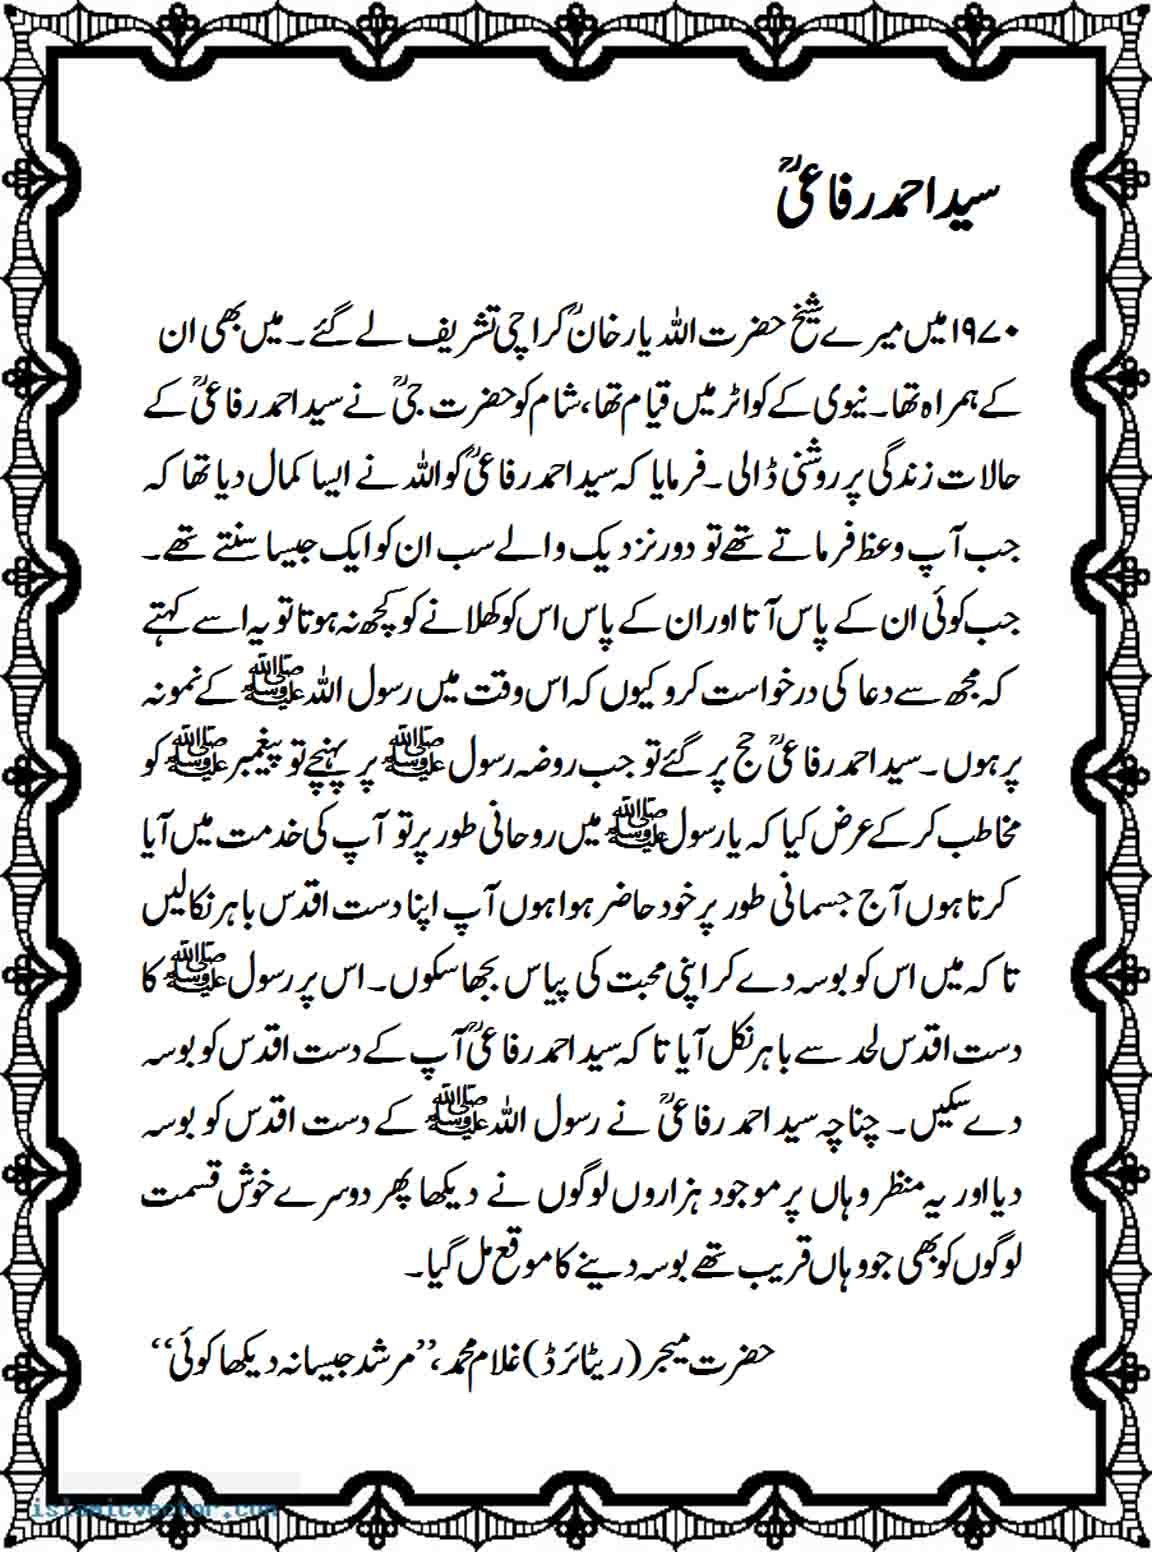 The Karamat of Syed Ahmed Rafaiؒ